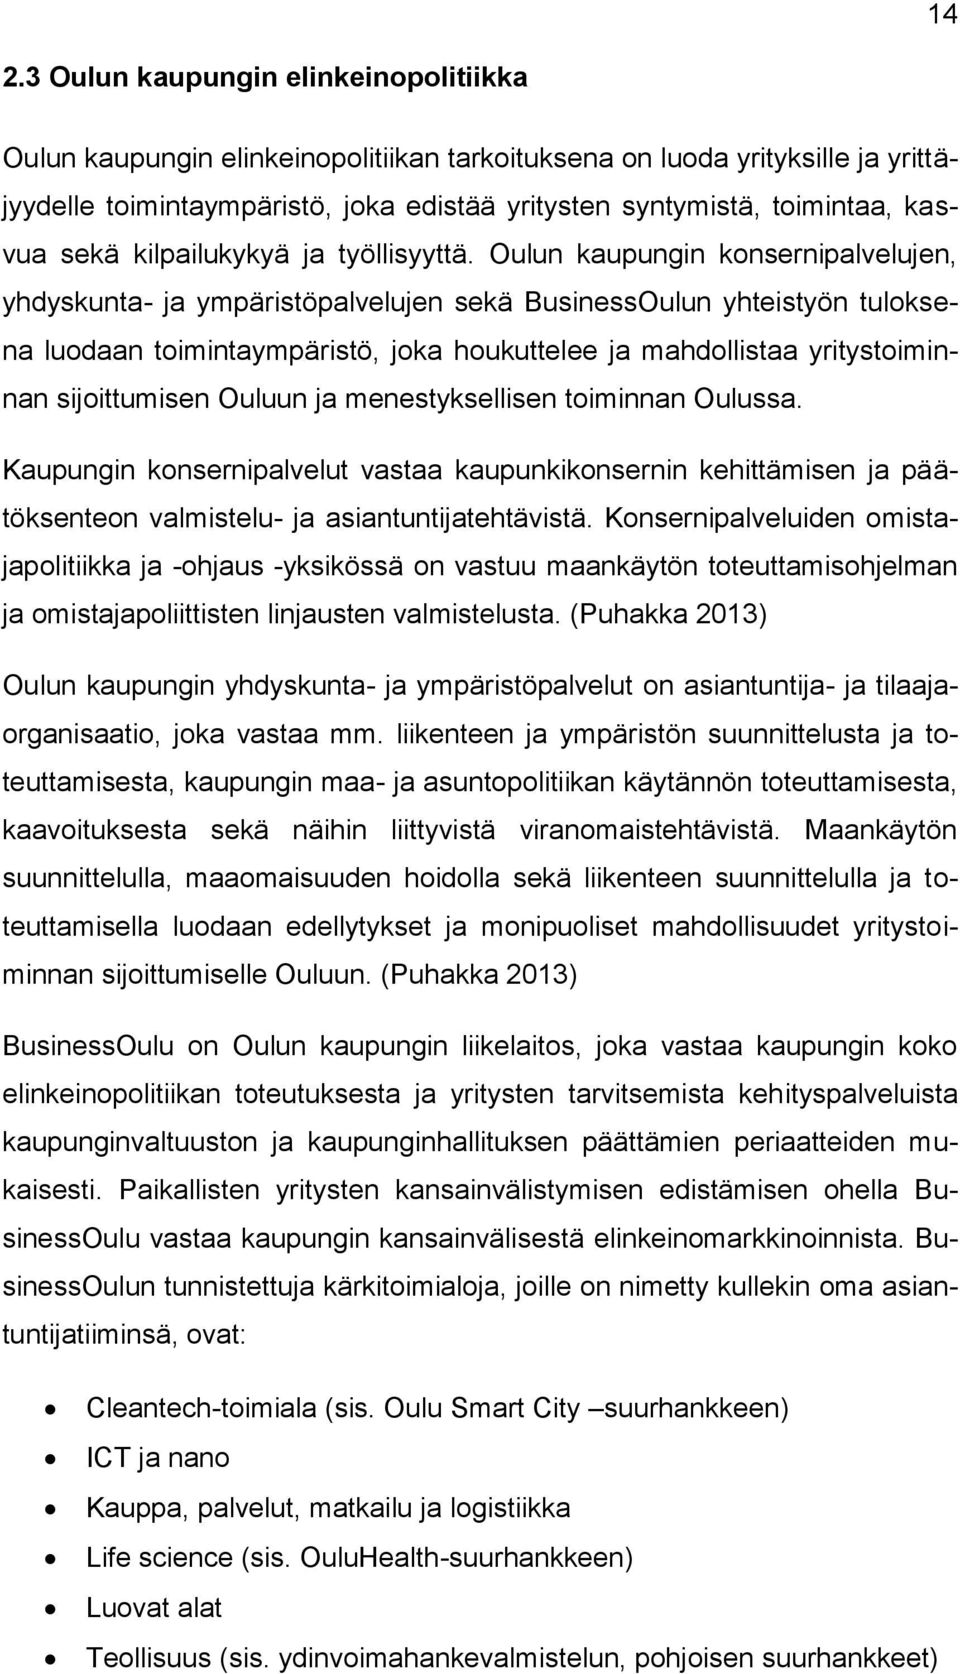 Oulun kaupungin konsernipalvelujen, yhdyskunta- ja ympäristöpalvelujen sekä BusinessOulun yhteistyön tuloksena luodaan toimintaympäristö, joka houkuttelee ja mahdollistaa yritystoiminnan